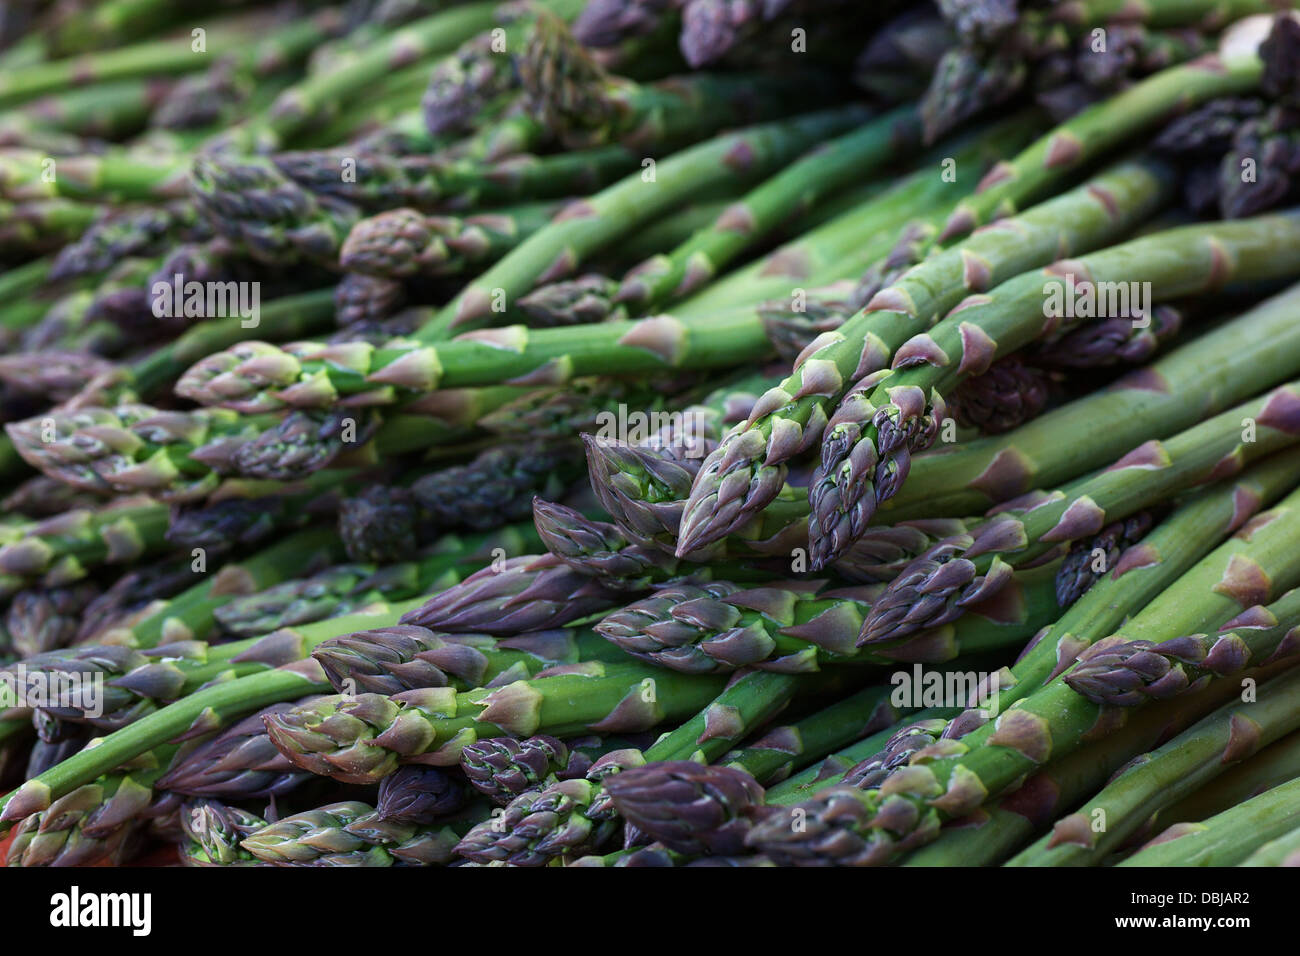 Pile d'asperges vertes au marché de fermiers Banque D'Images